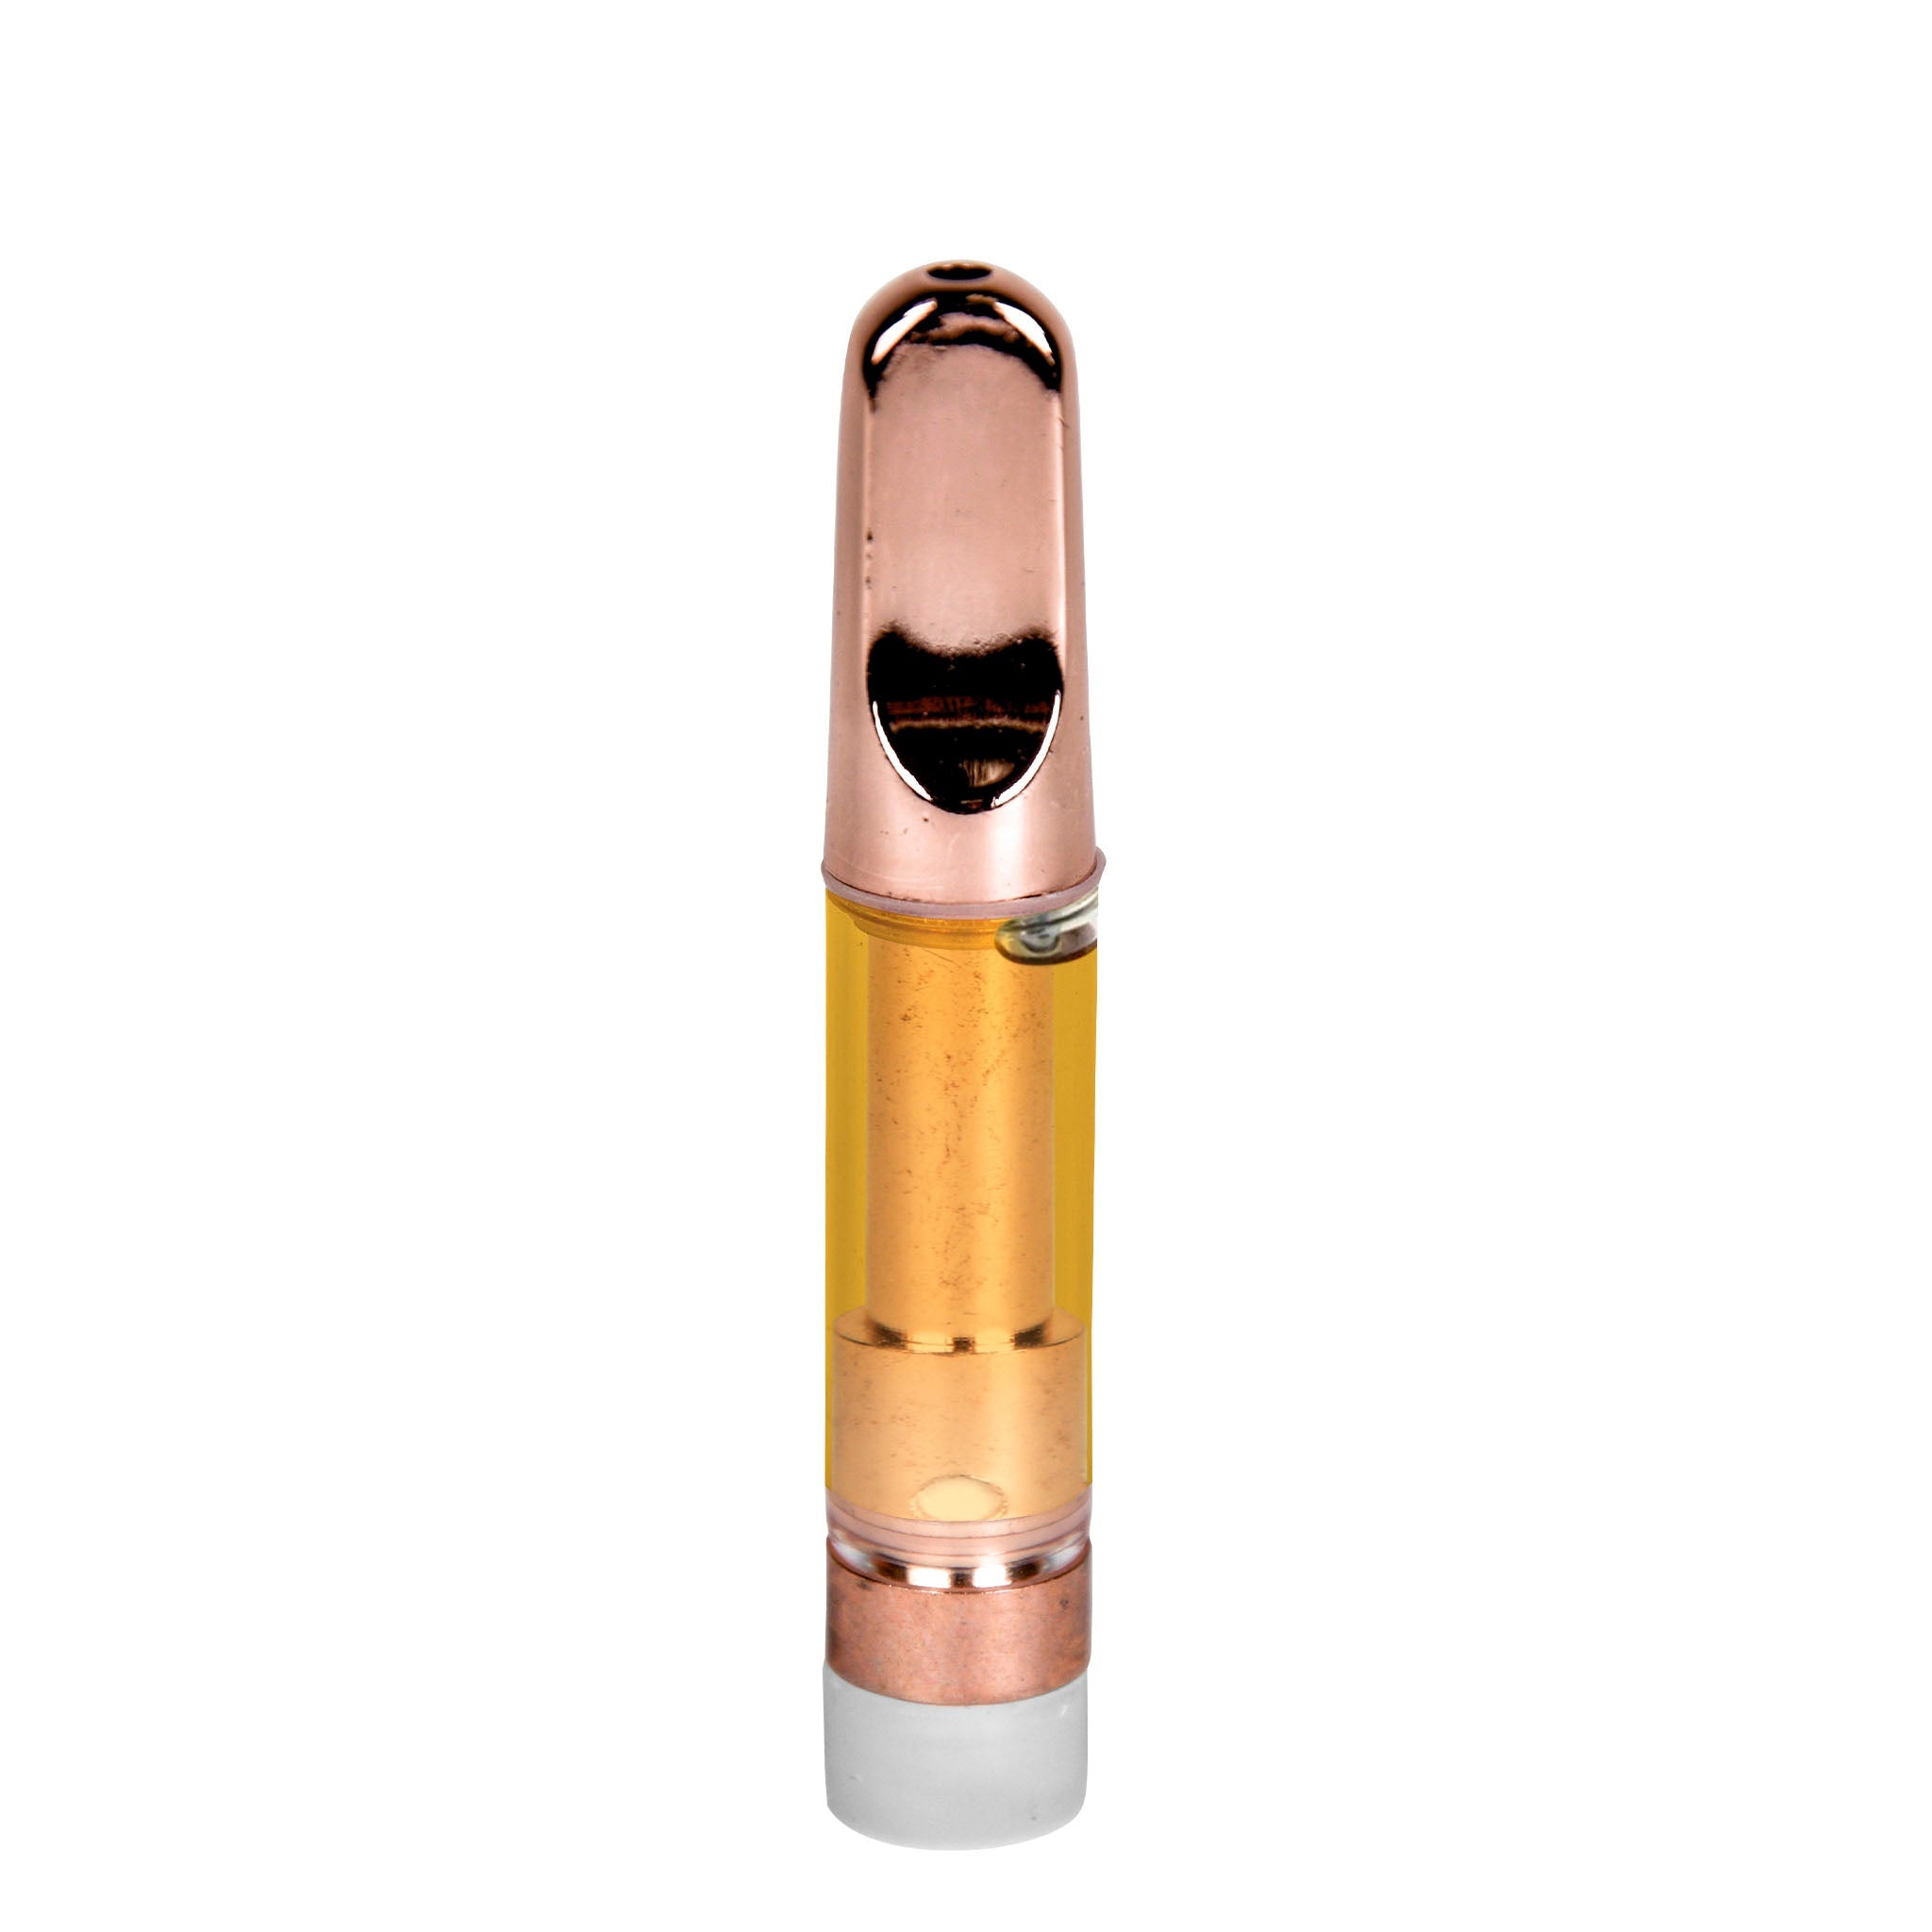 Empty 1mL 510 Rose Gold Tip Vape Cartridge-Vape Cartridges-Vape Pens Wholesale